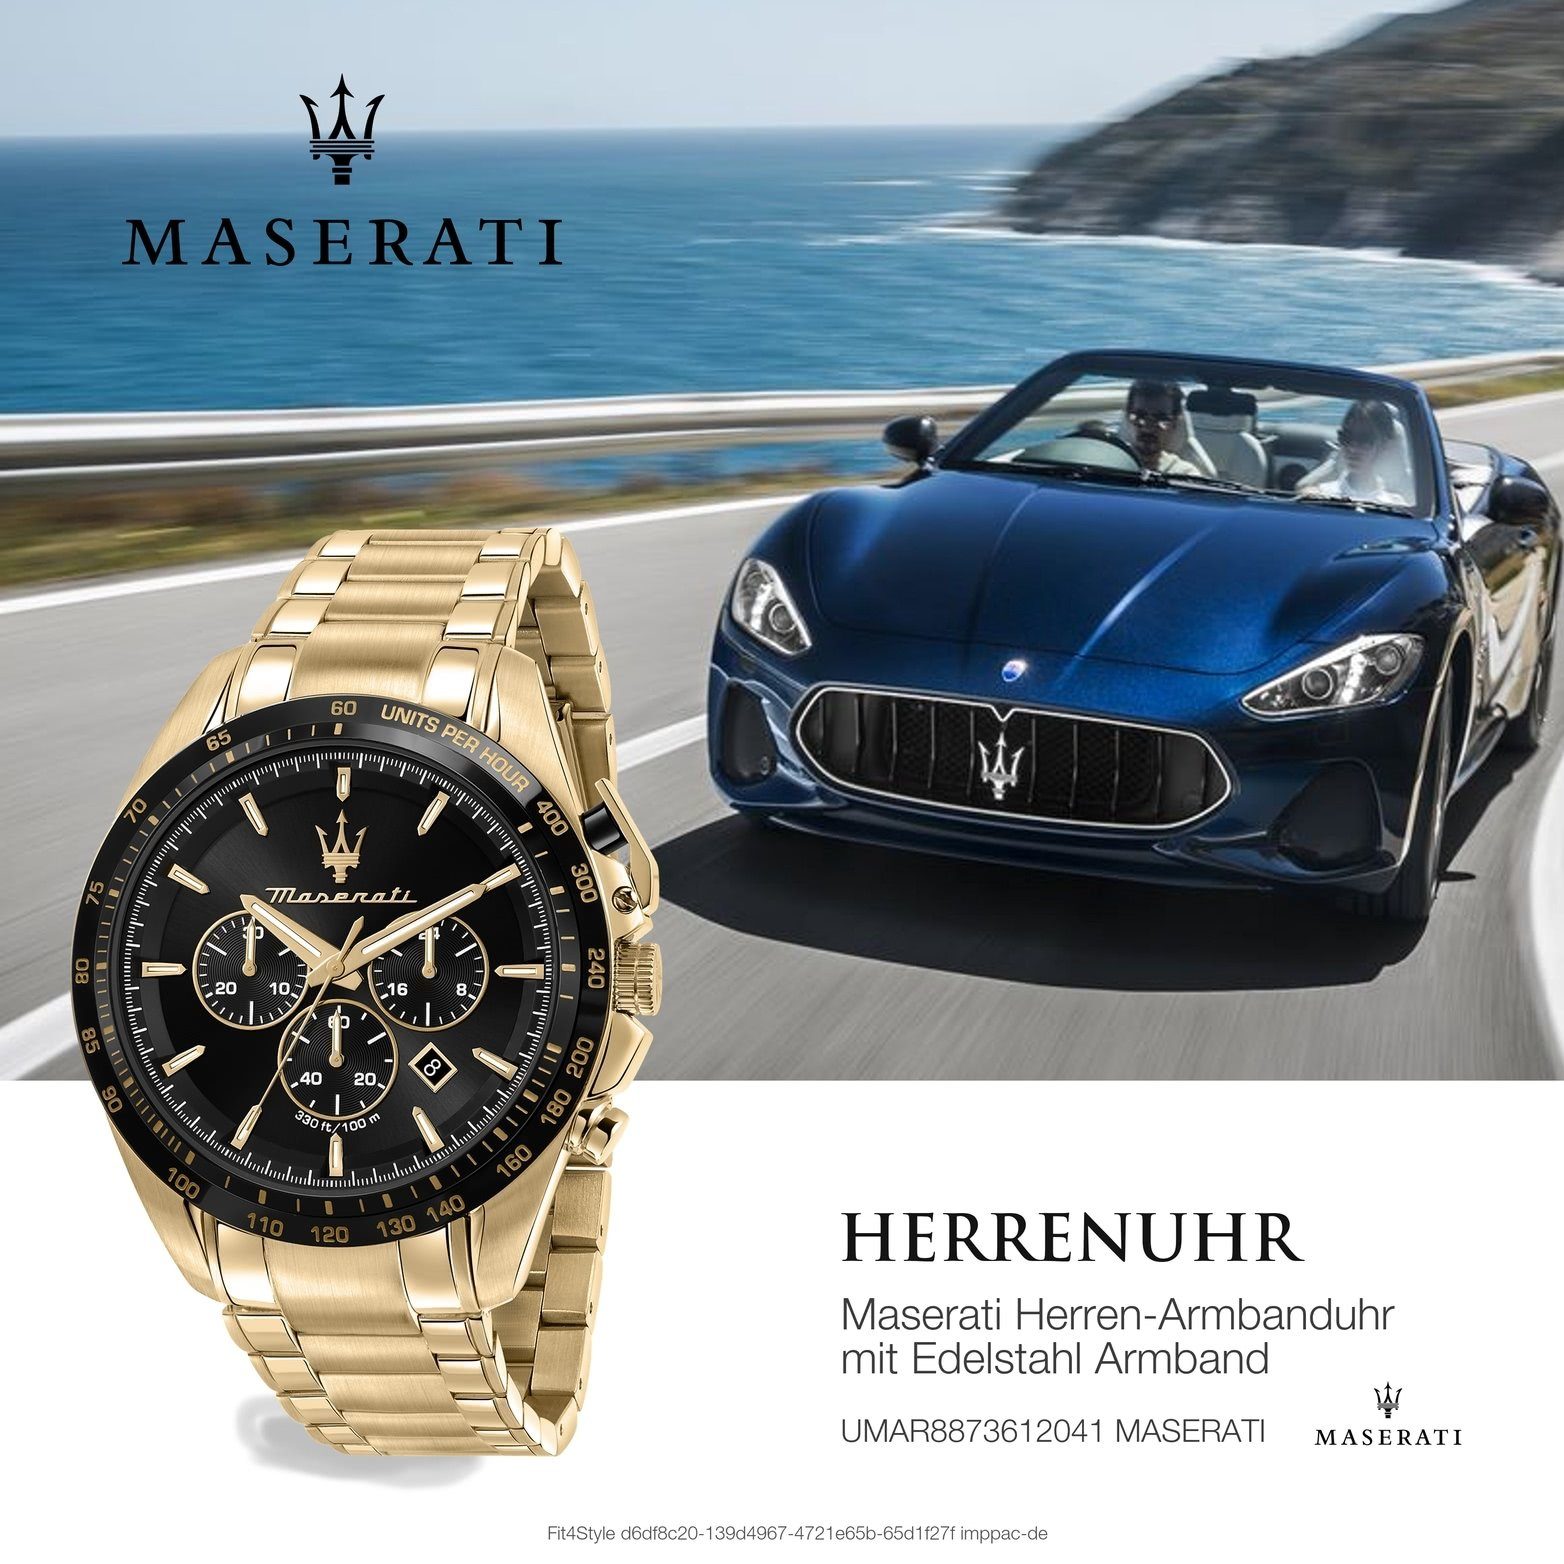 Maserati Armband-Uhr, MASERATI 45mm) Gehäuse, Edelstahl groß Edelstahlarmband, rundes schwarz (ca. Herrenuhr Chronograph